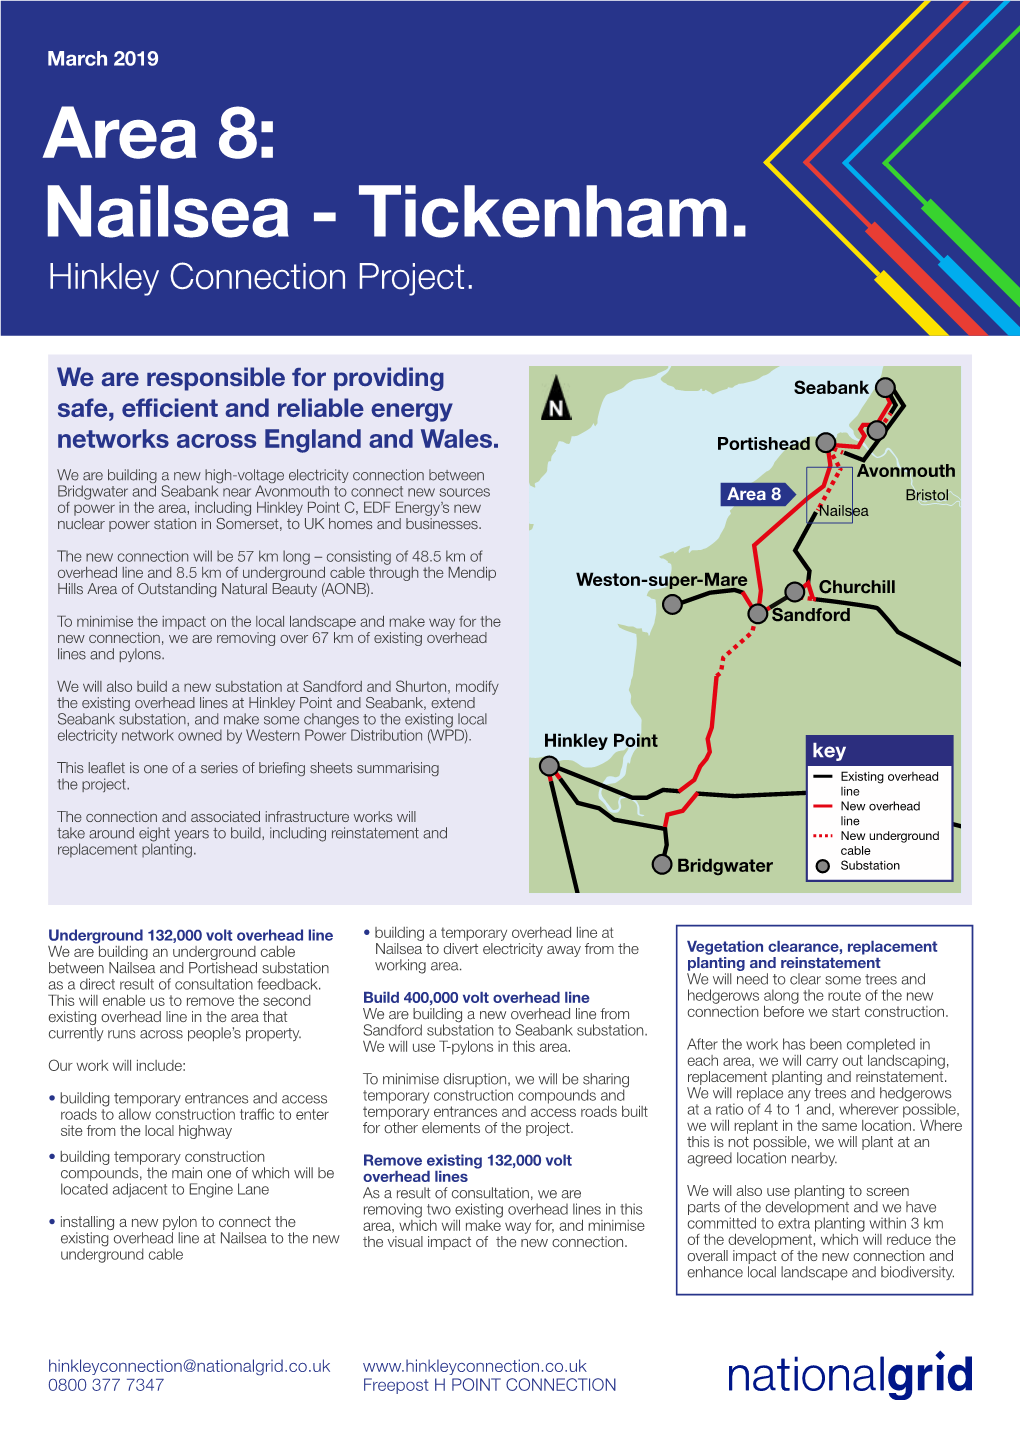 Area 8: Nailsea - Tickenham